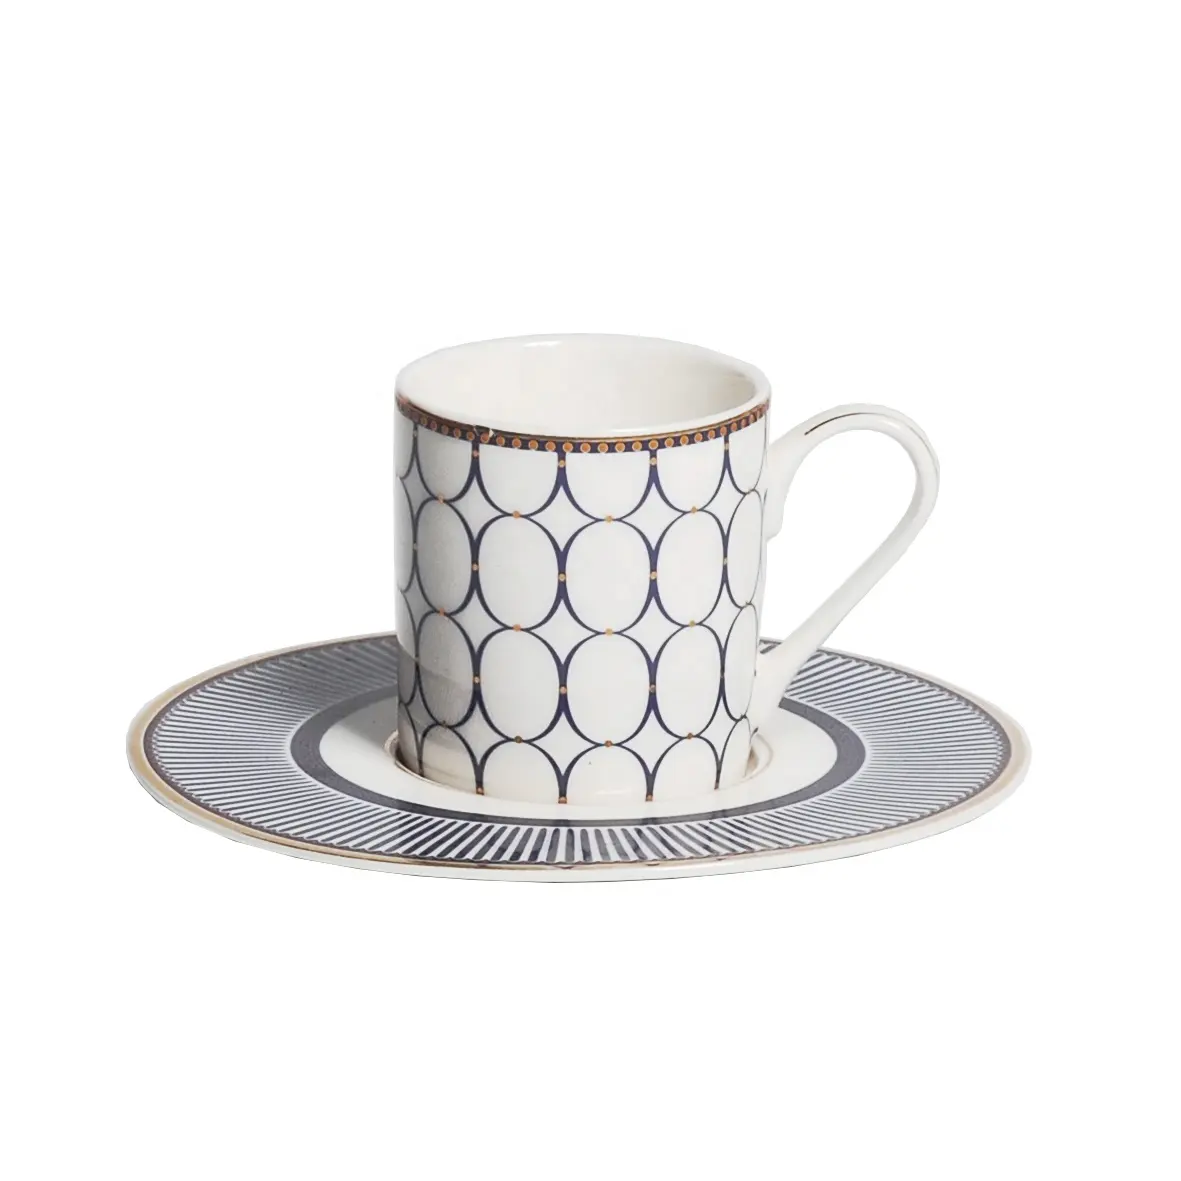 Accesorios de cocina, taza de café espresso de cerámica recta árabe turca, platillo